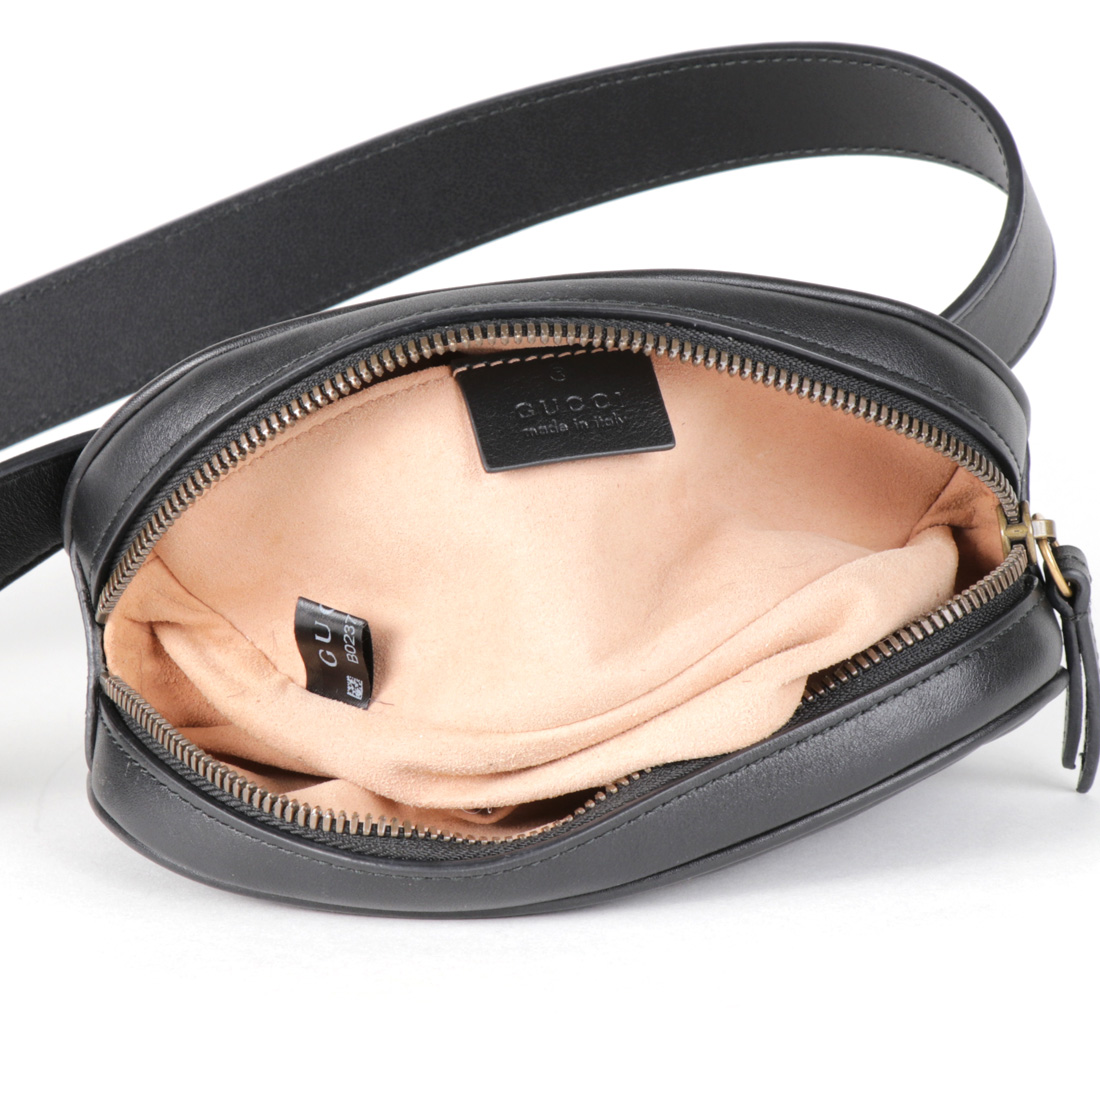 Gucci GG Marmont Matelassé Leather Belt Bag | The Lux Portal